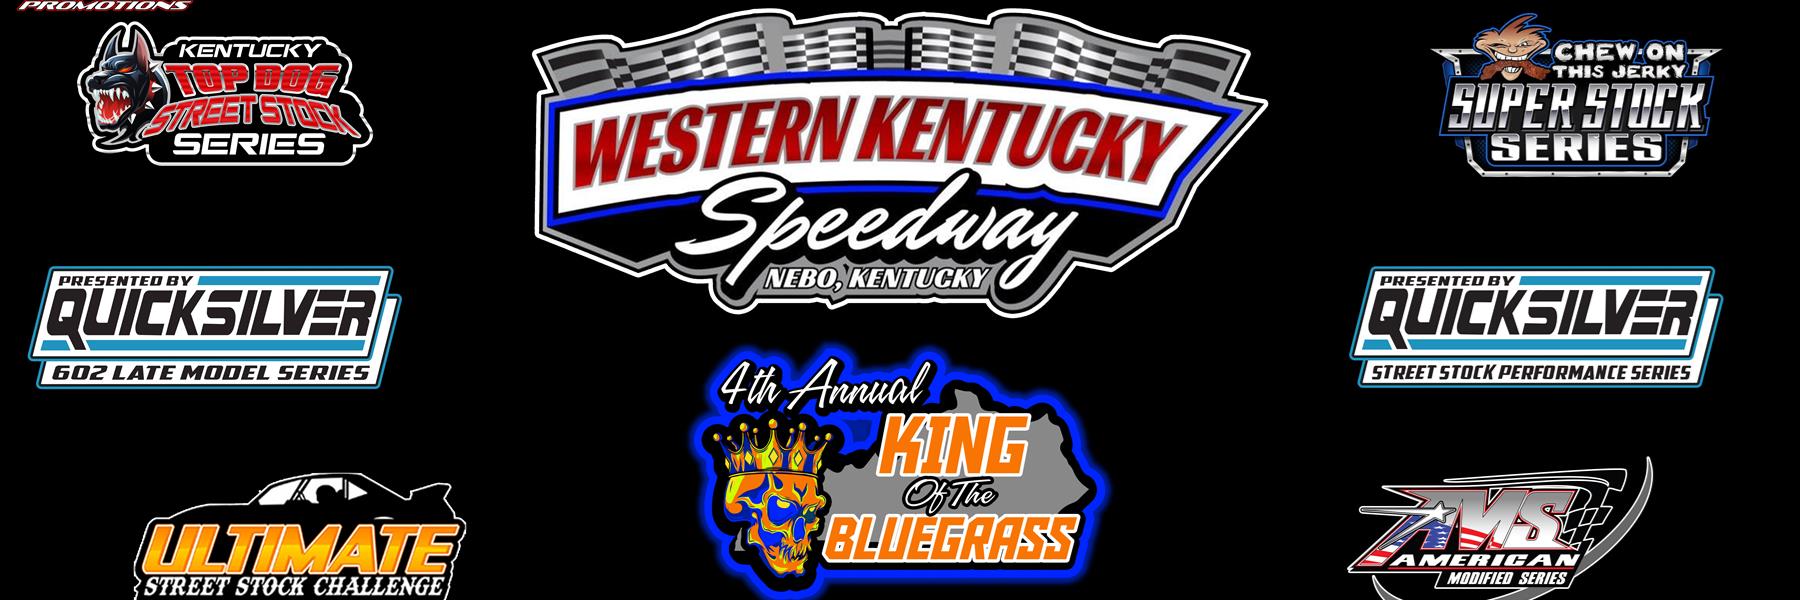 8/6/2022 - Western Kentucky Speedway